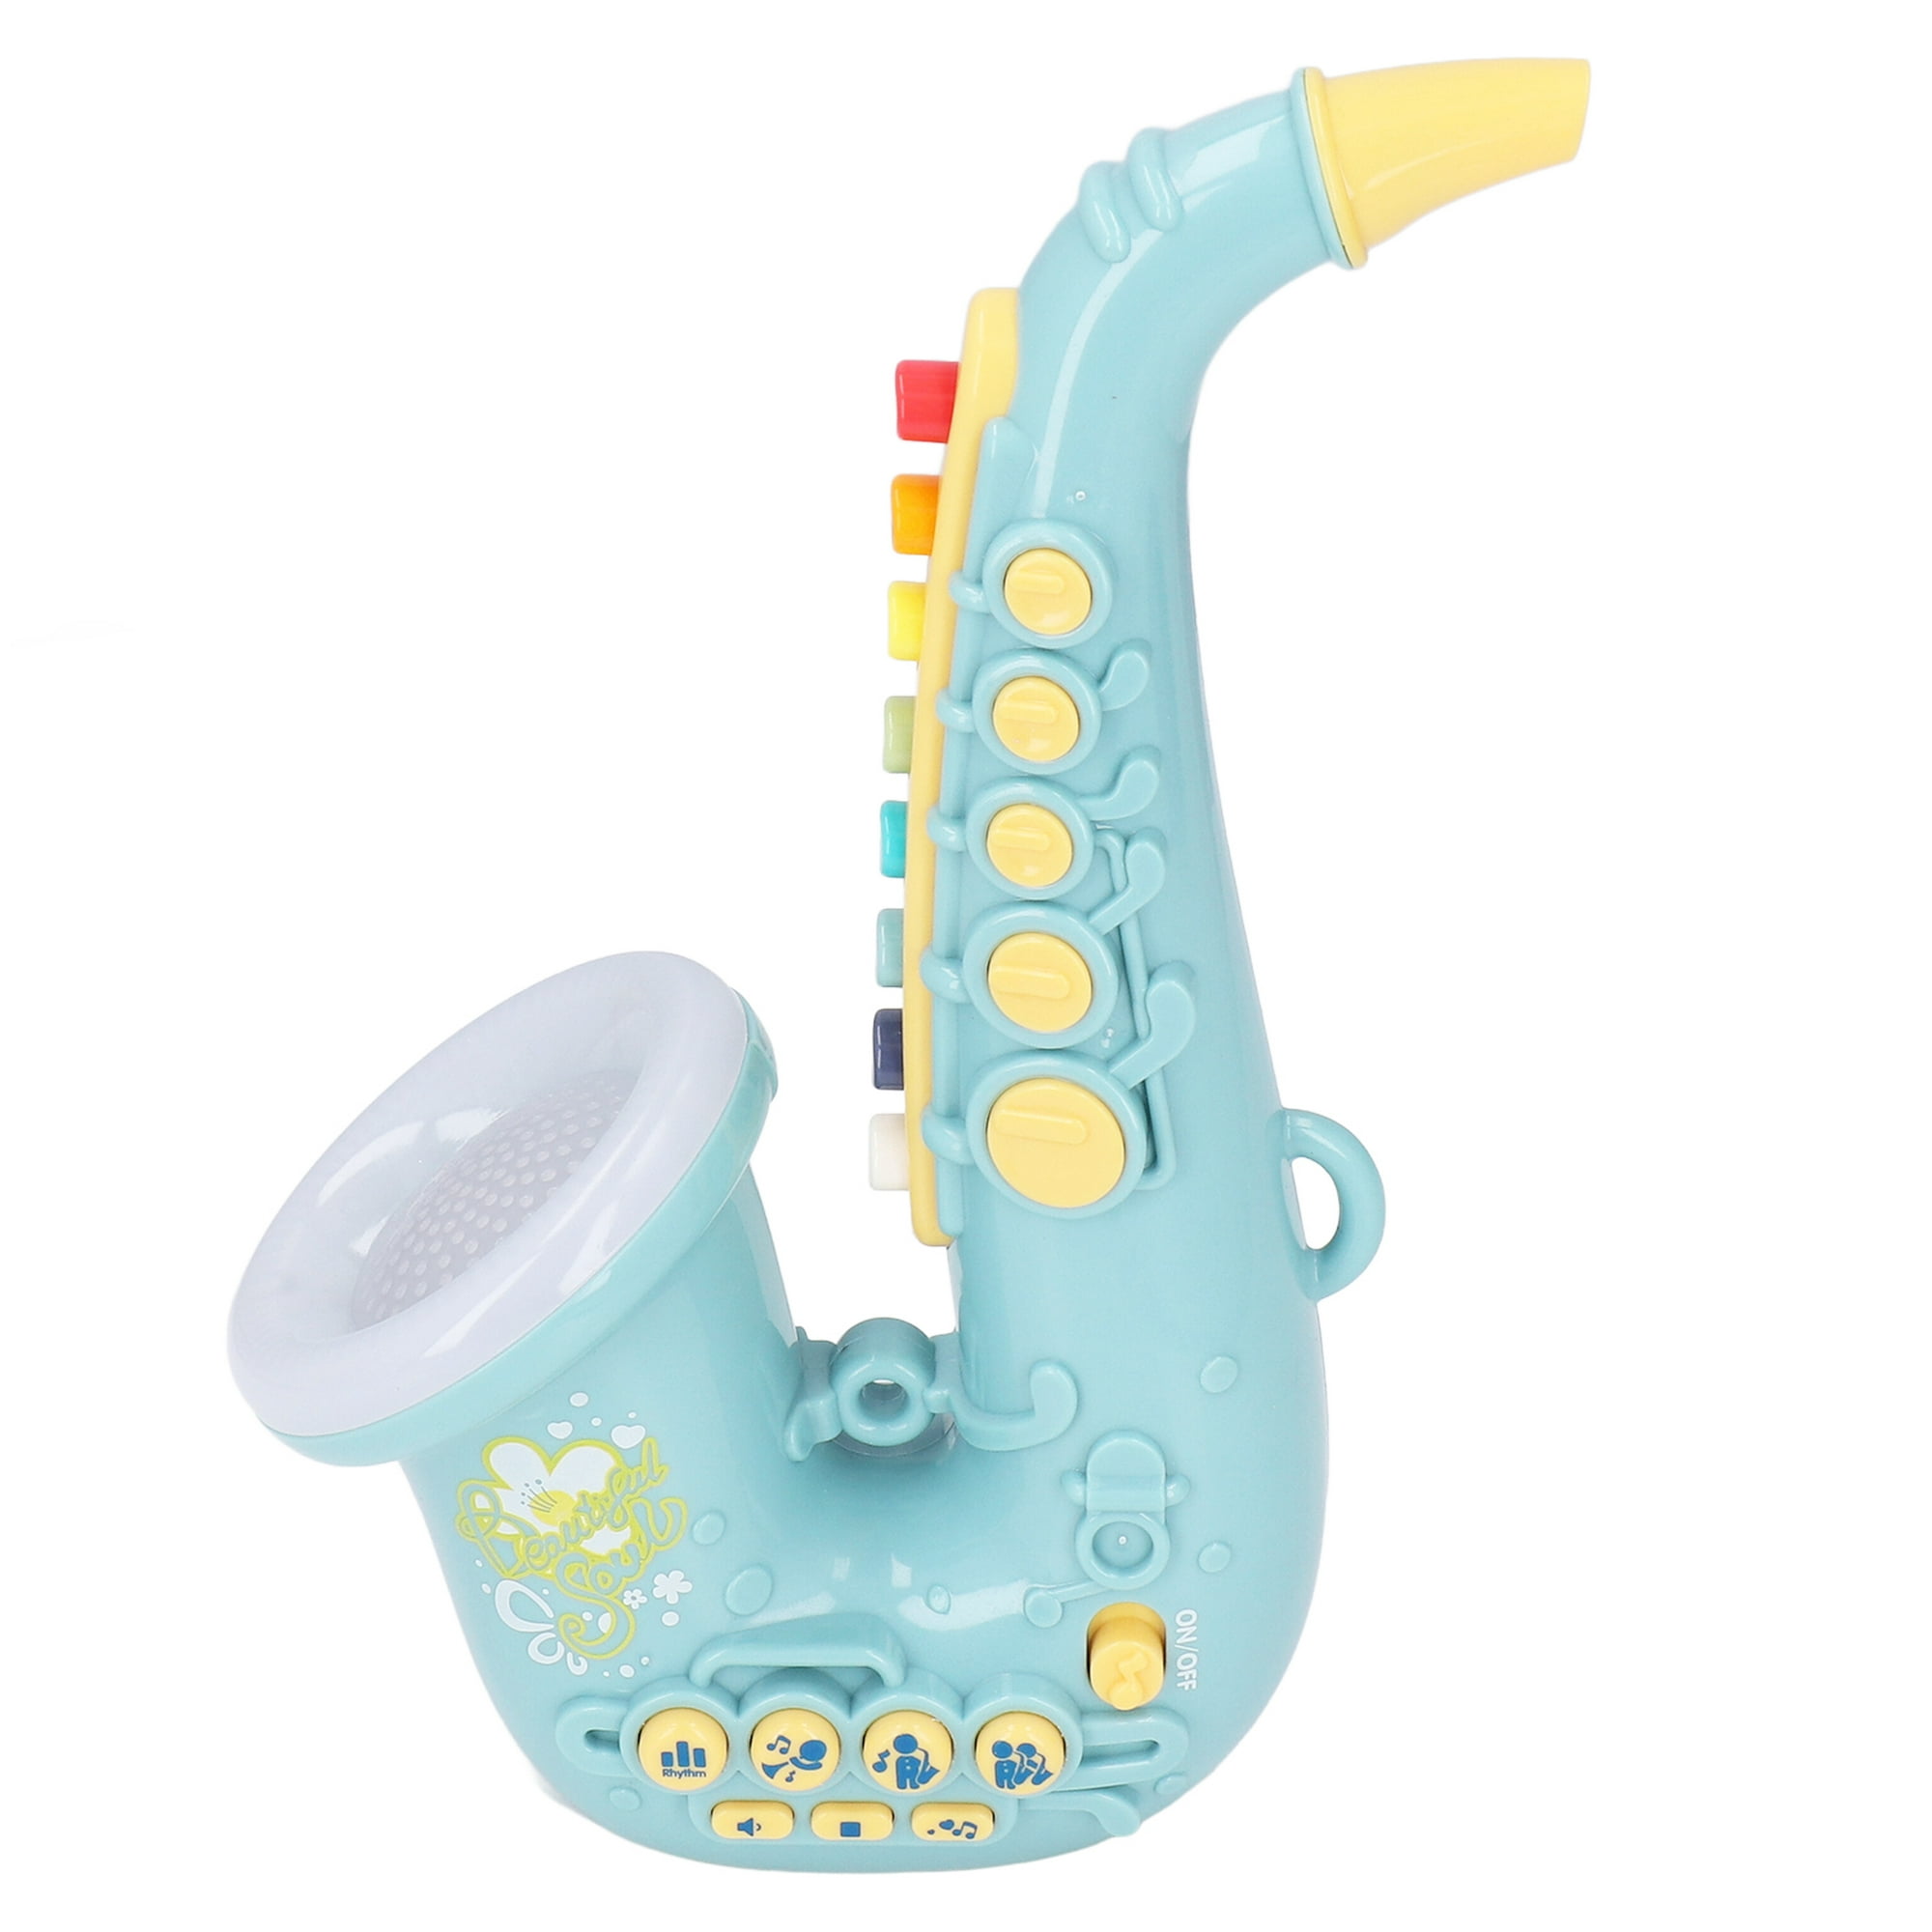  Smaroll Juguete de saxofón para niños con luz y sonido,  multifuncional, juguetes educativos tempranos, juguete de instrumento  musical para niños pequeños, niños, principiantes, simulación musical, mini  saxofón, para niños : Juguetes